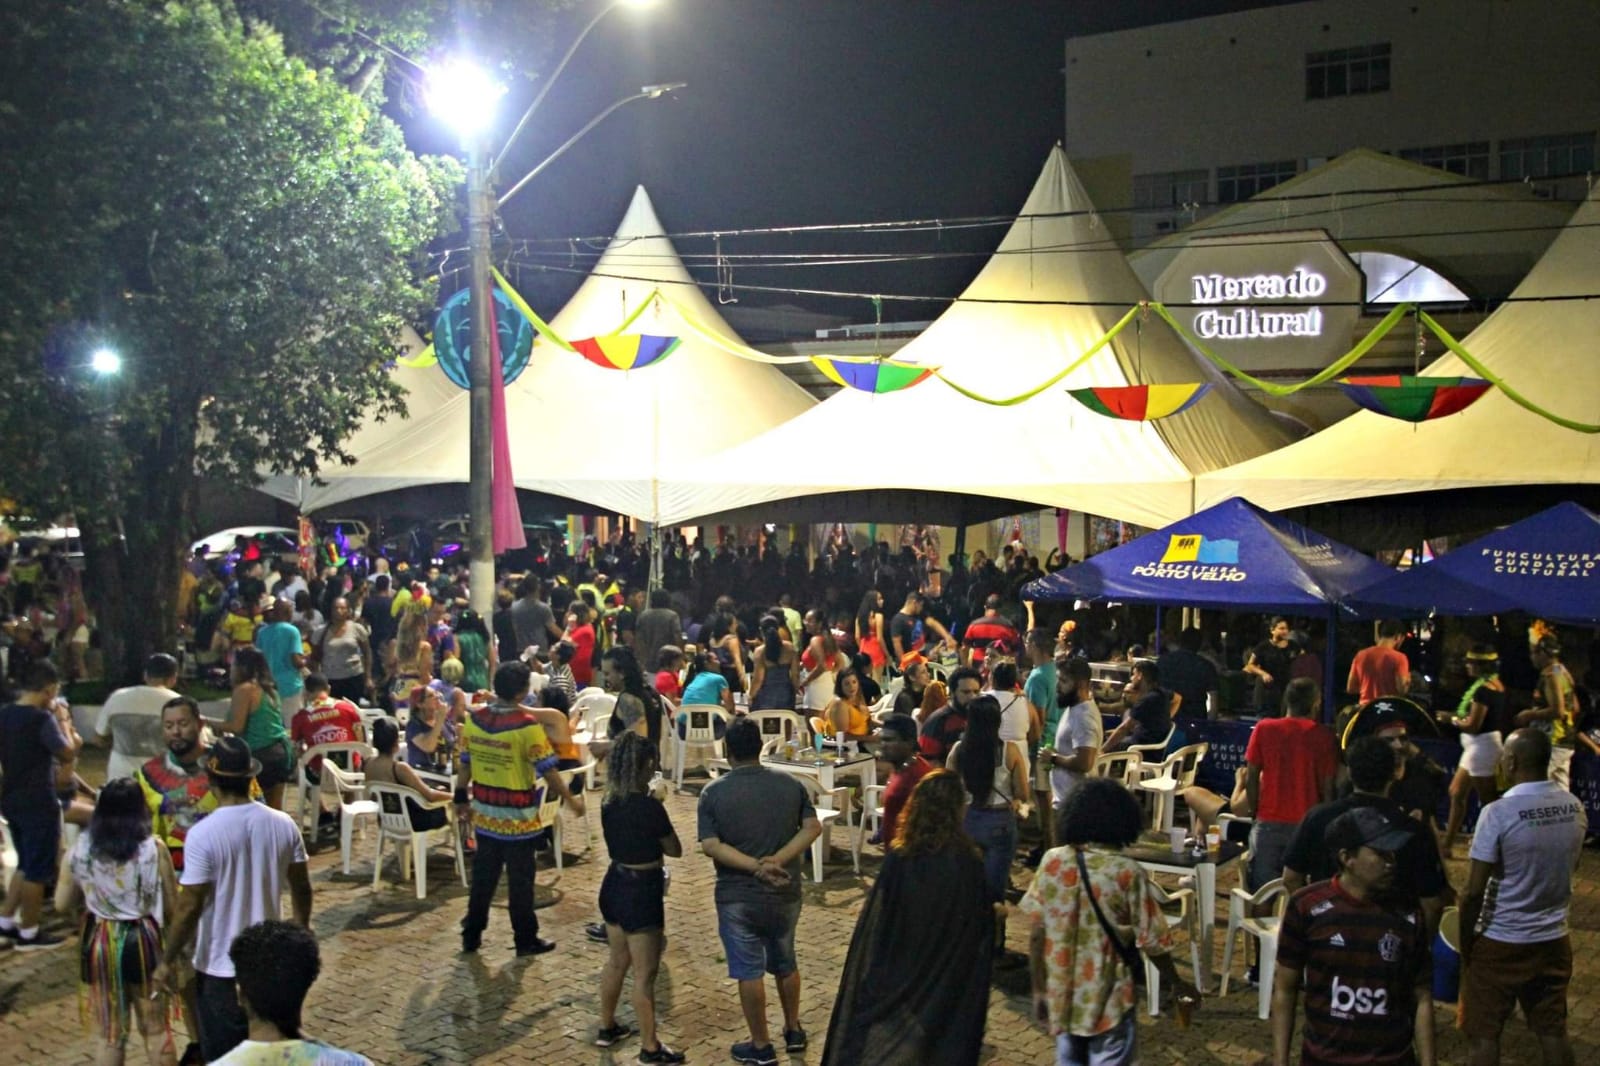 ANIVERSÁRIO: Permissionários do Mercado Cultural comemoram dois anos de atividades